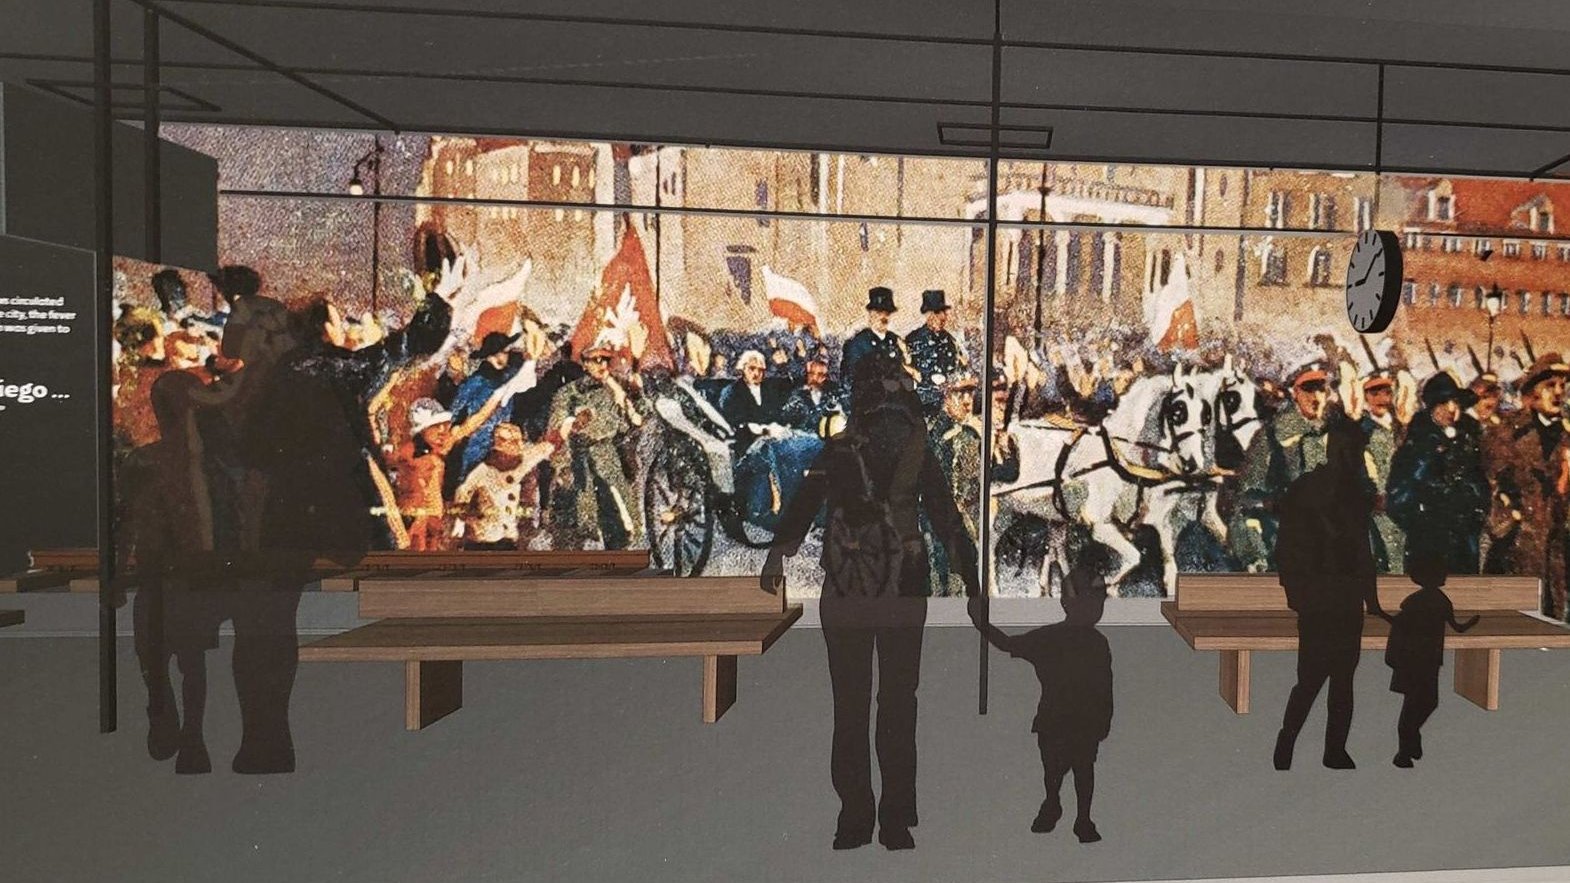 Obaz na ścianie przedstawiający przejazd Paderewskiego przez miasto, przed obrazem sylwetki oglądających widzów